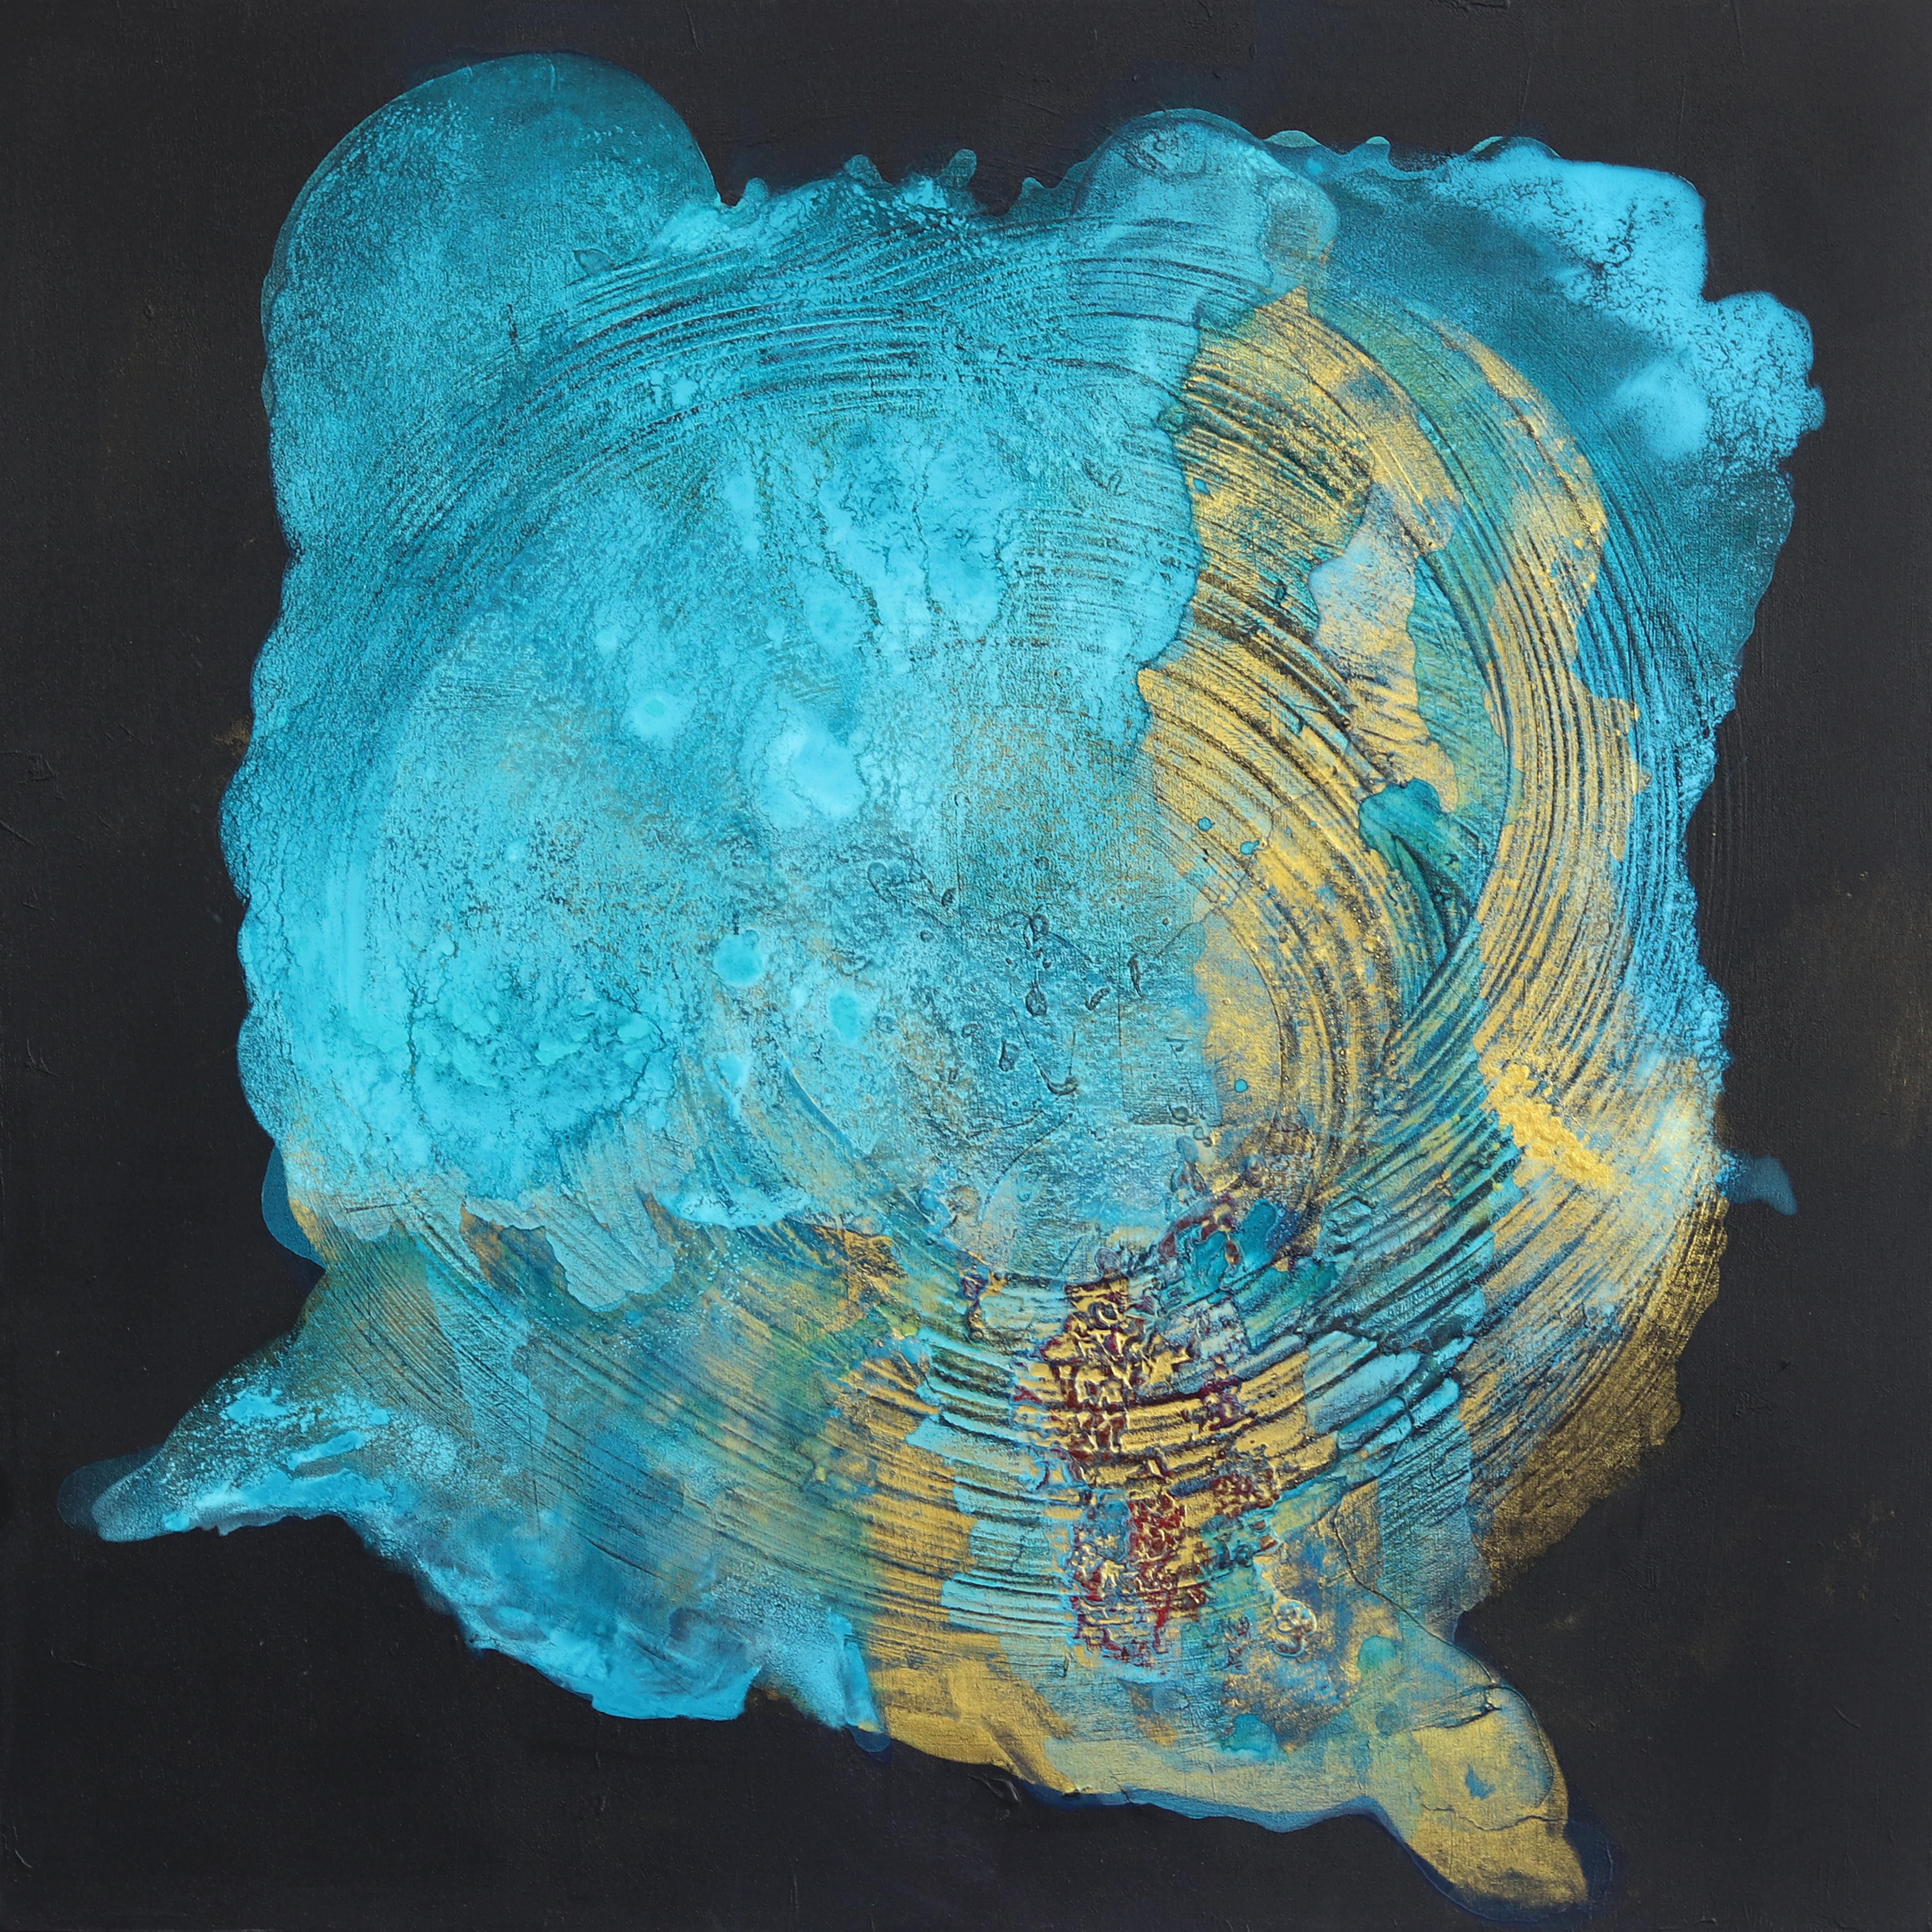 Abstract Painting Clara Berta - Trésors de Sarcelles -  Turquoise, peinture abstraite texturée originale